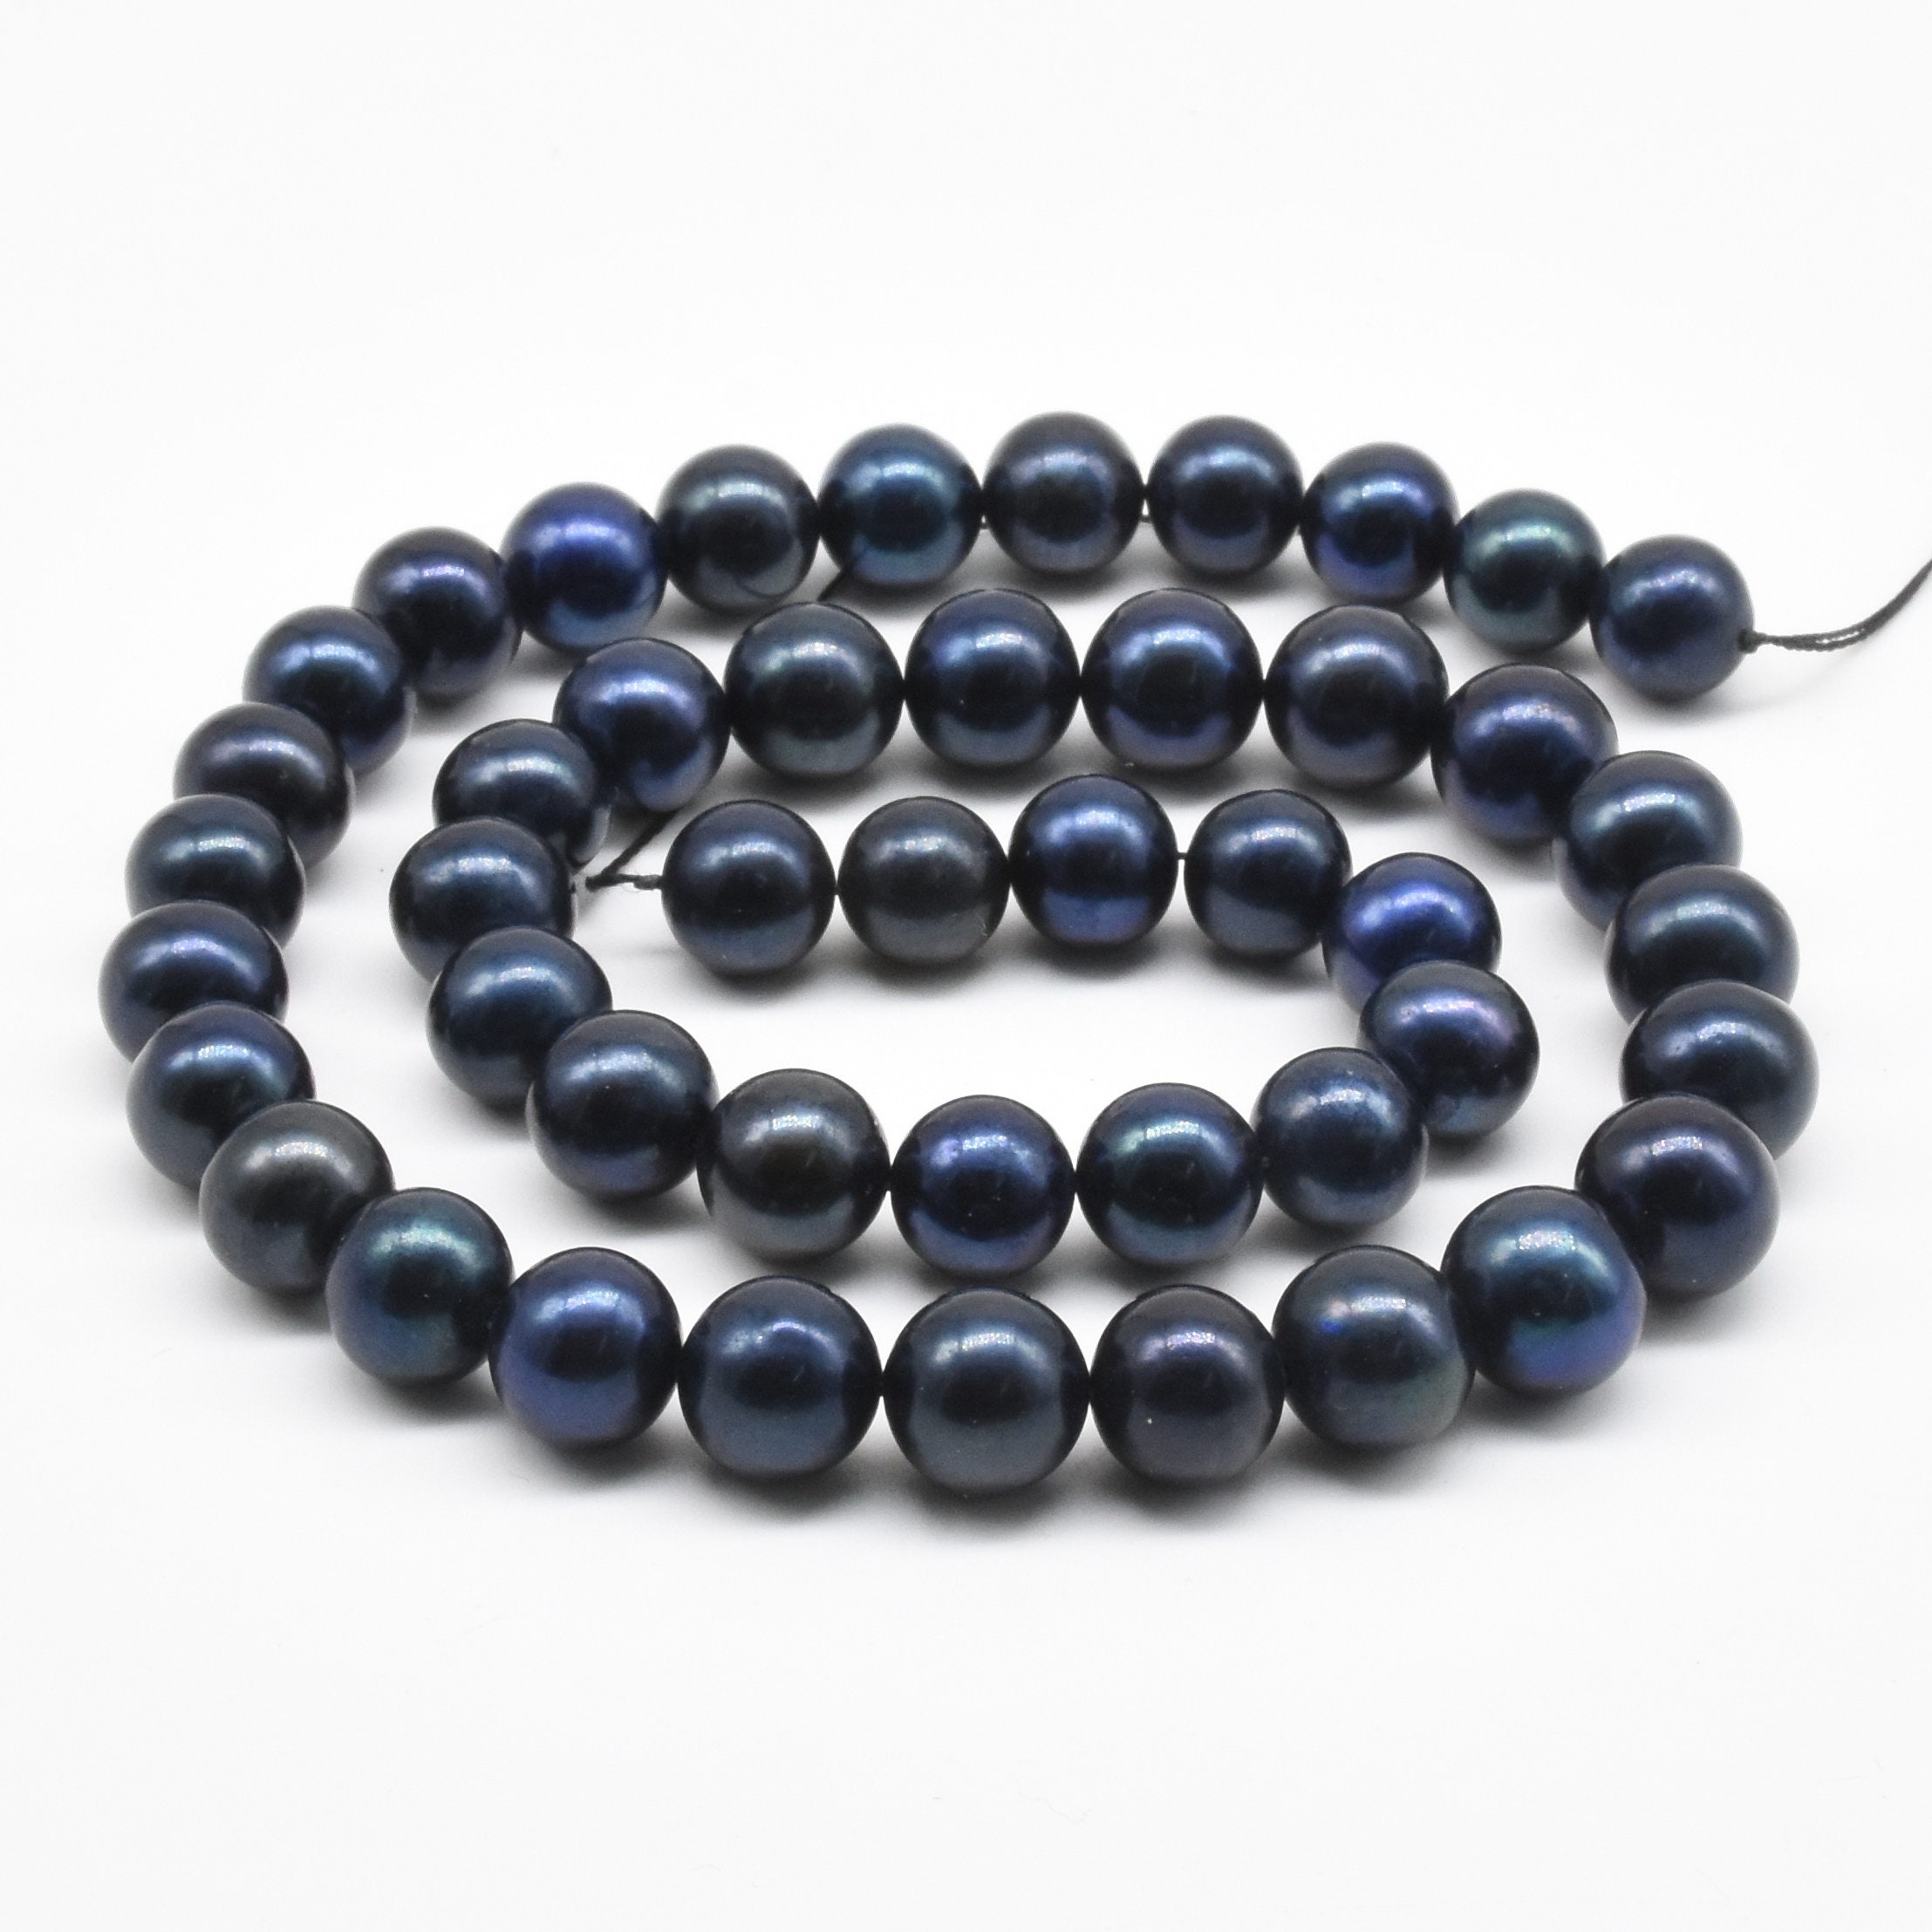 Discount Wholesale naturel véritable saphir bleu Round Loose Beads 4-18 mm 16" 